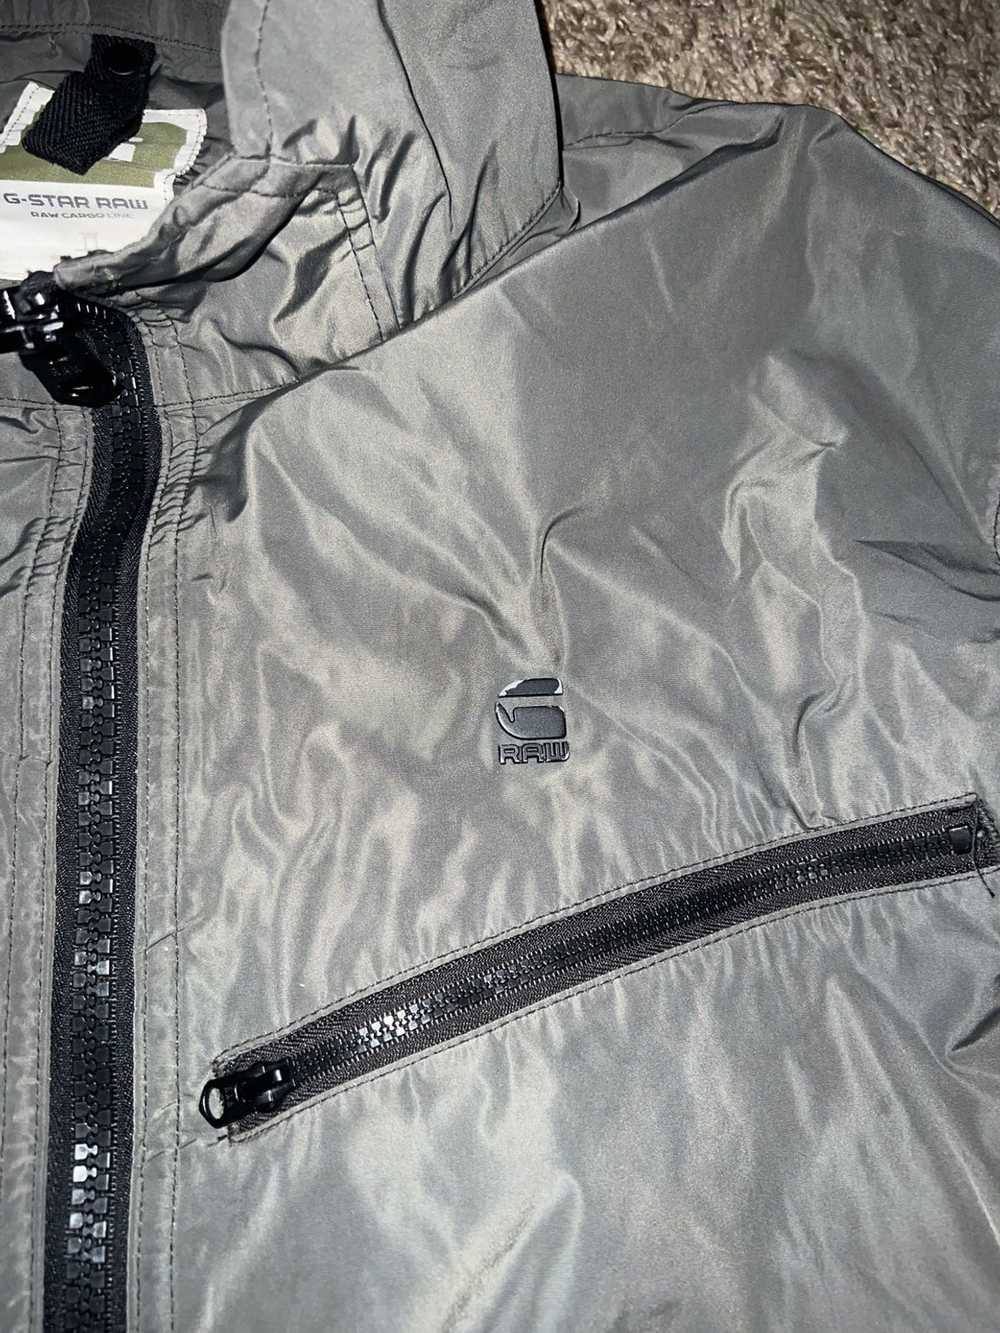 Gstar Gstar lightweight zip up jacket - image 2